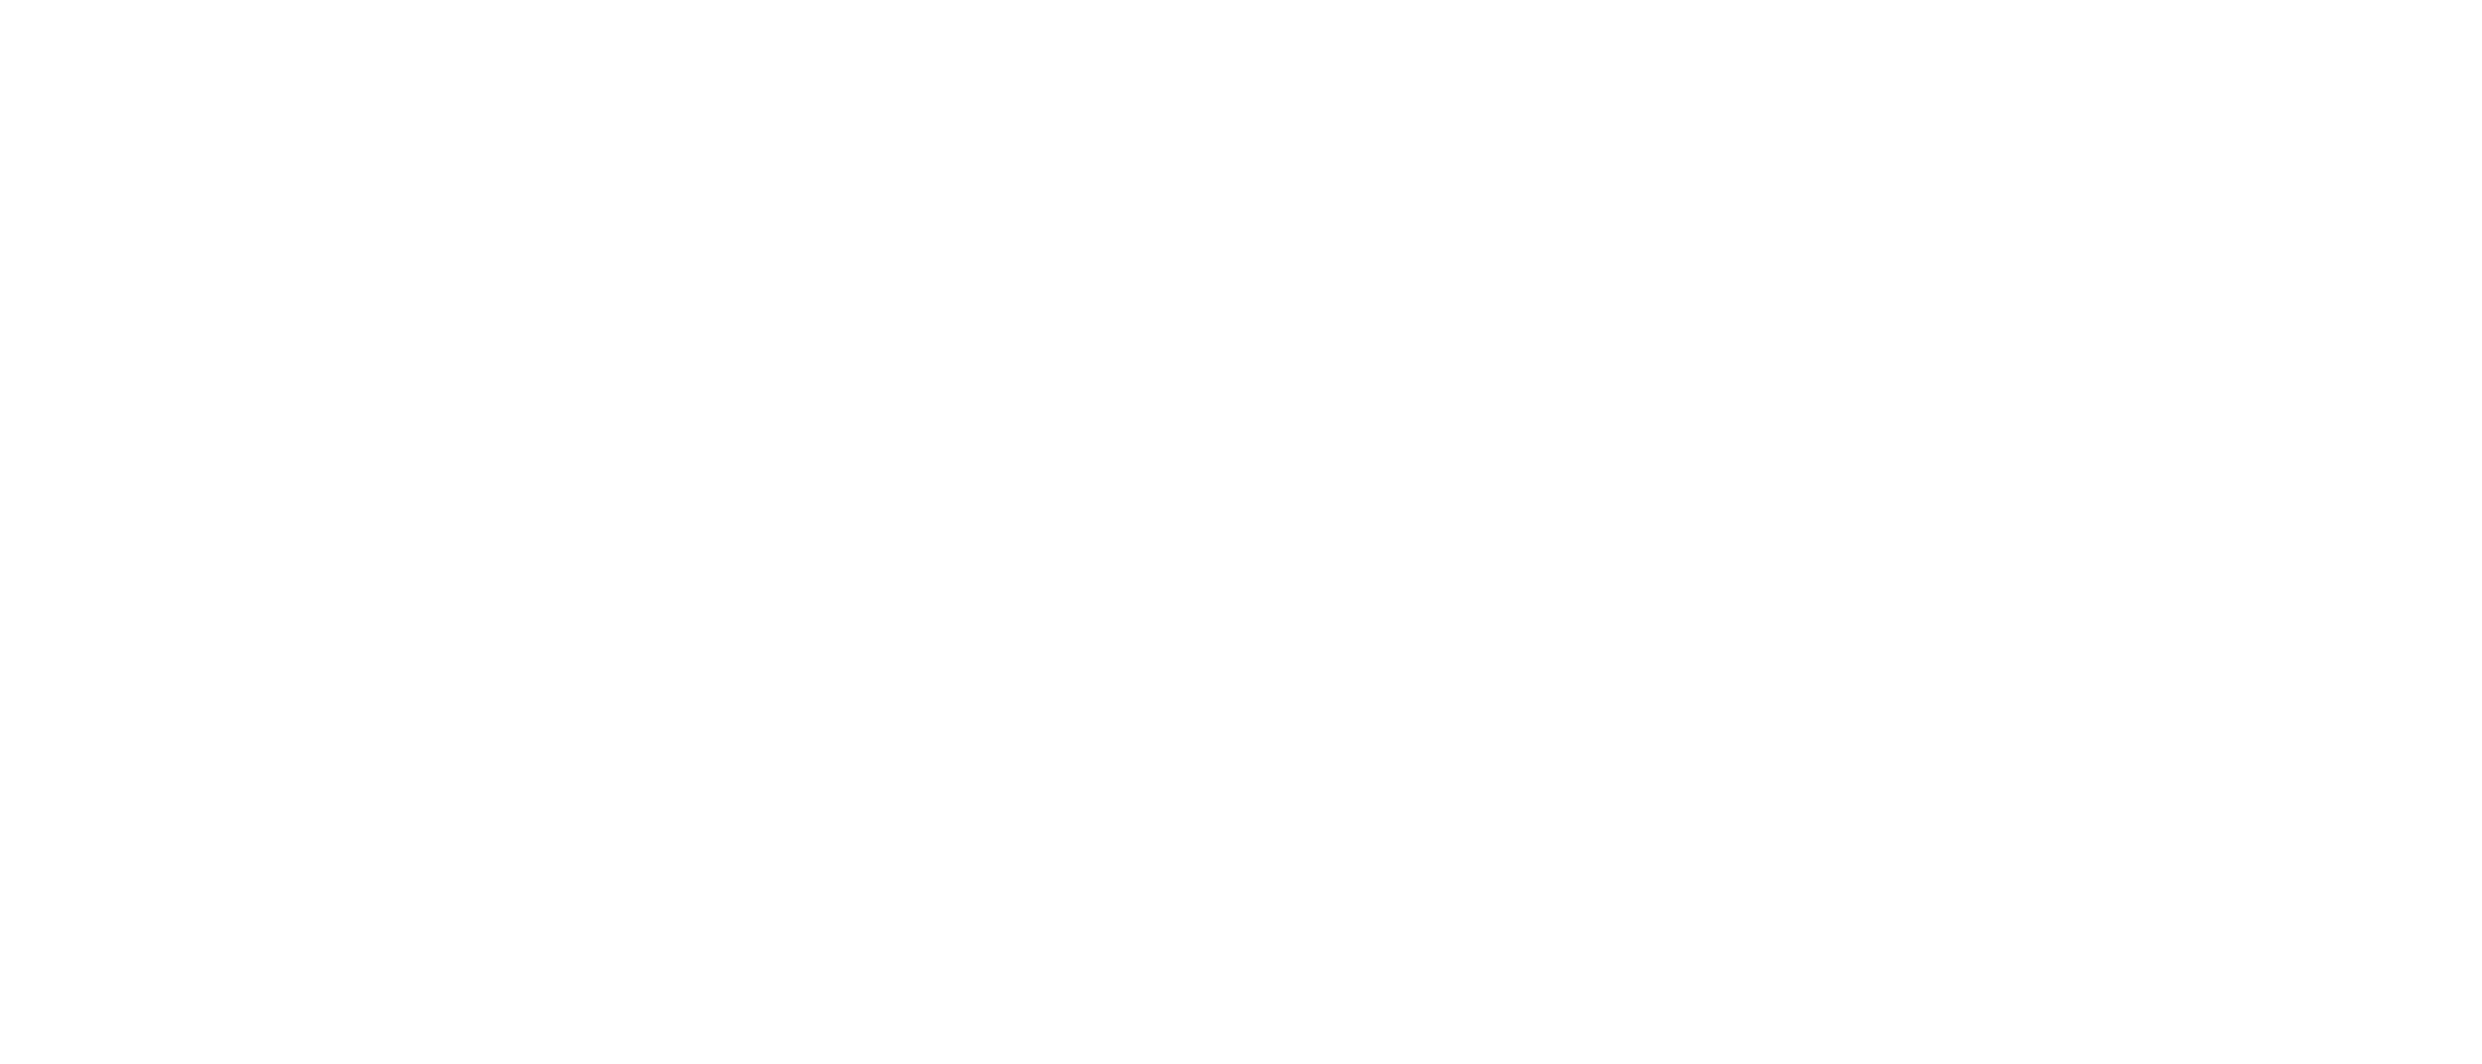 Effra Social logo